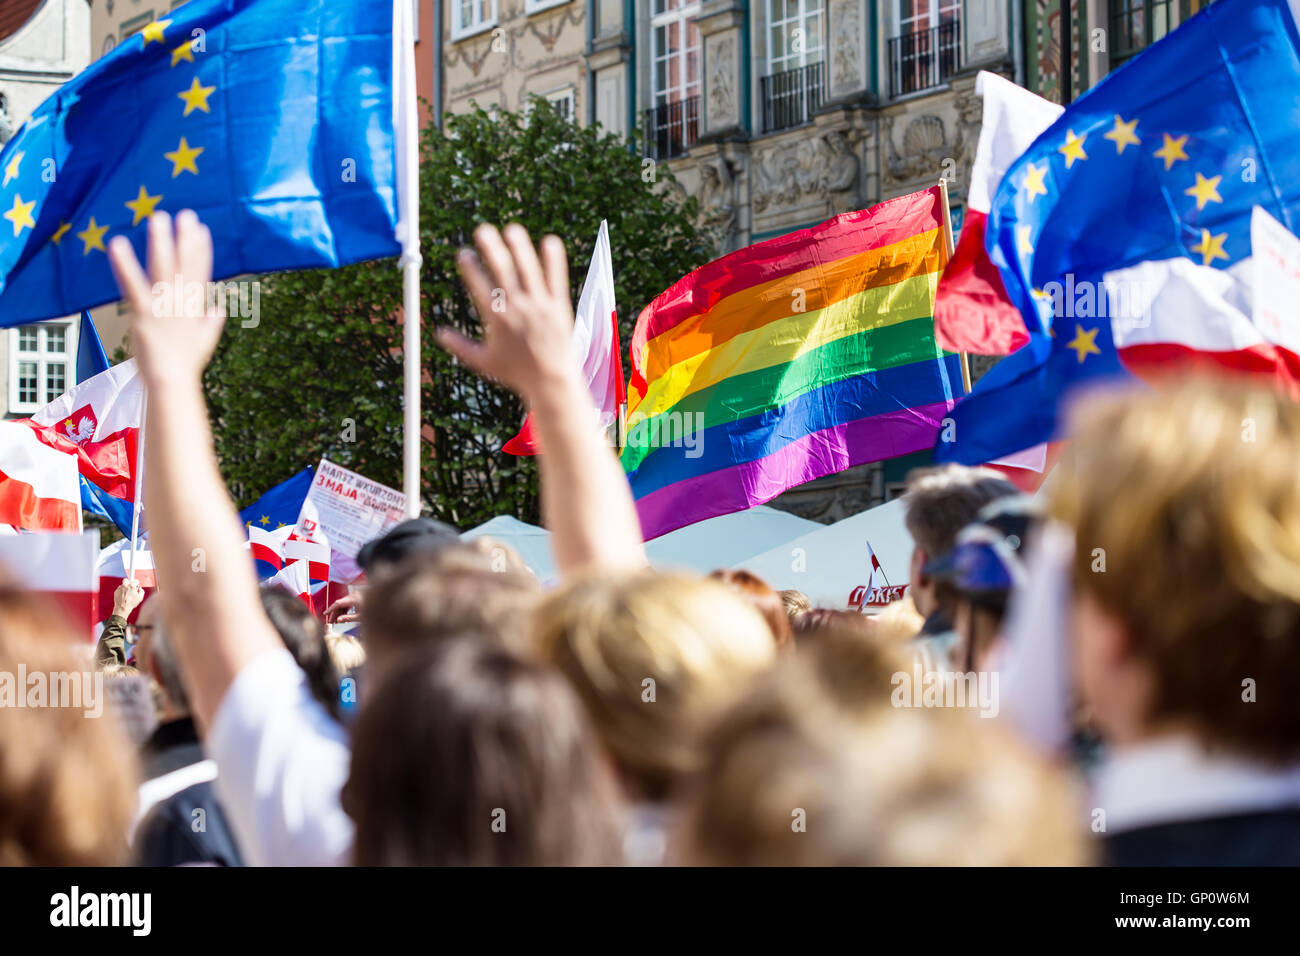 Danzig, Polen, 05.03.2016 - Menschen mit Fahnen der EU, Polen und LGBT-Regenbogen Fahnen bei demonstration Stockfoto